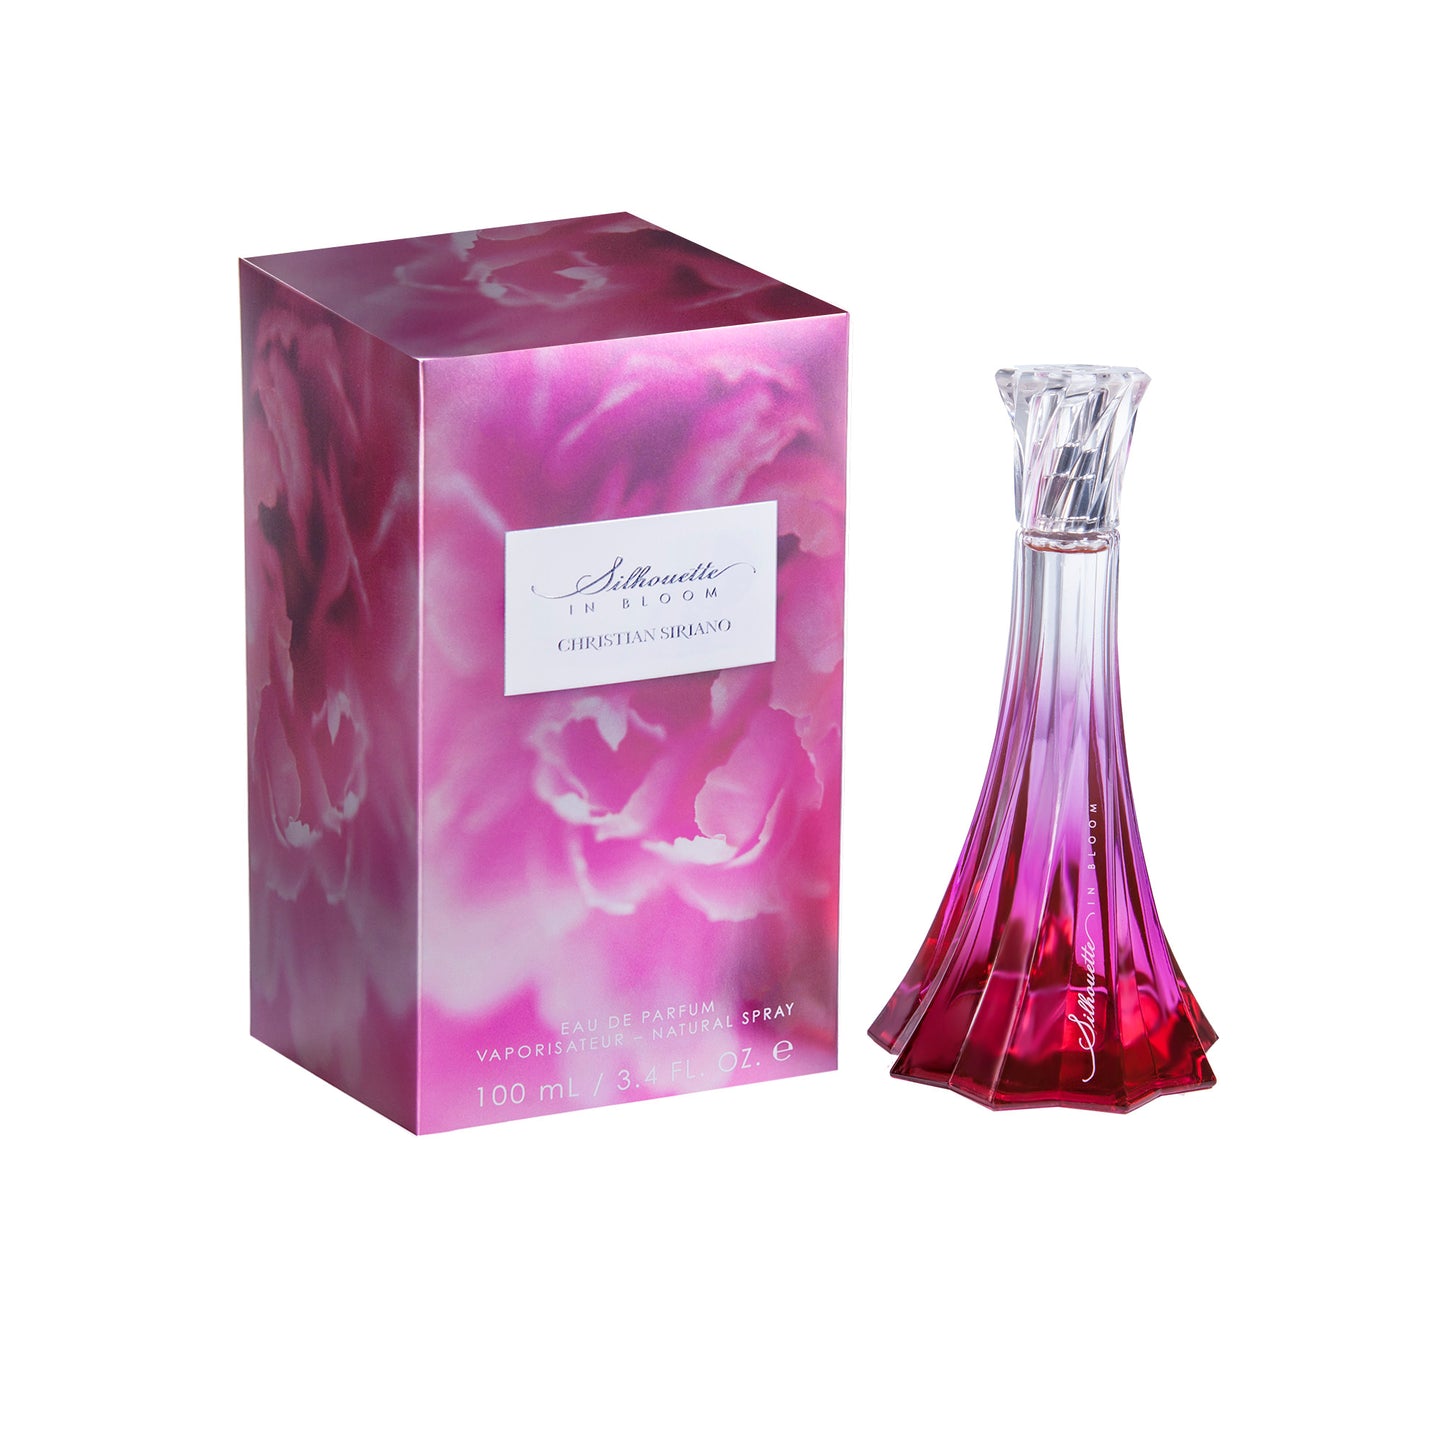 Silhouette in Bloom 2ml Sample Vial - Eau de Parfum